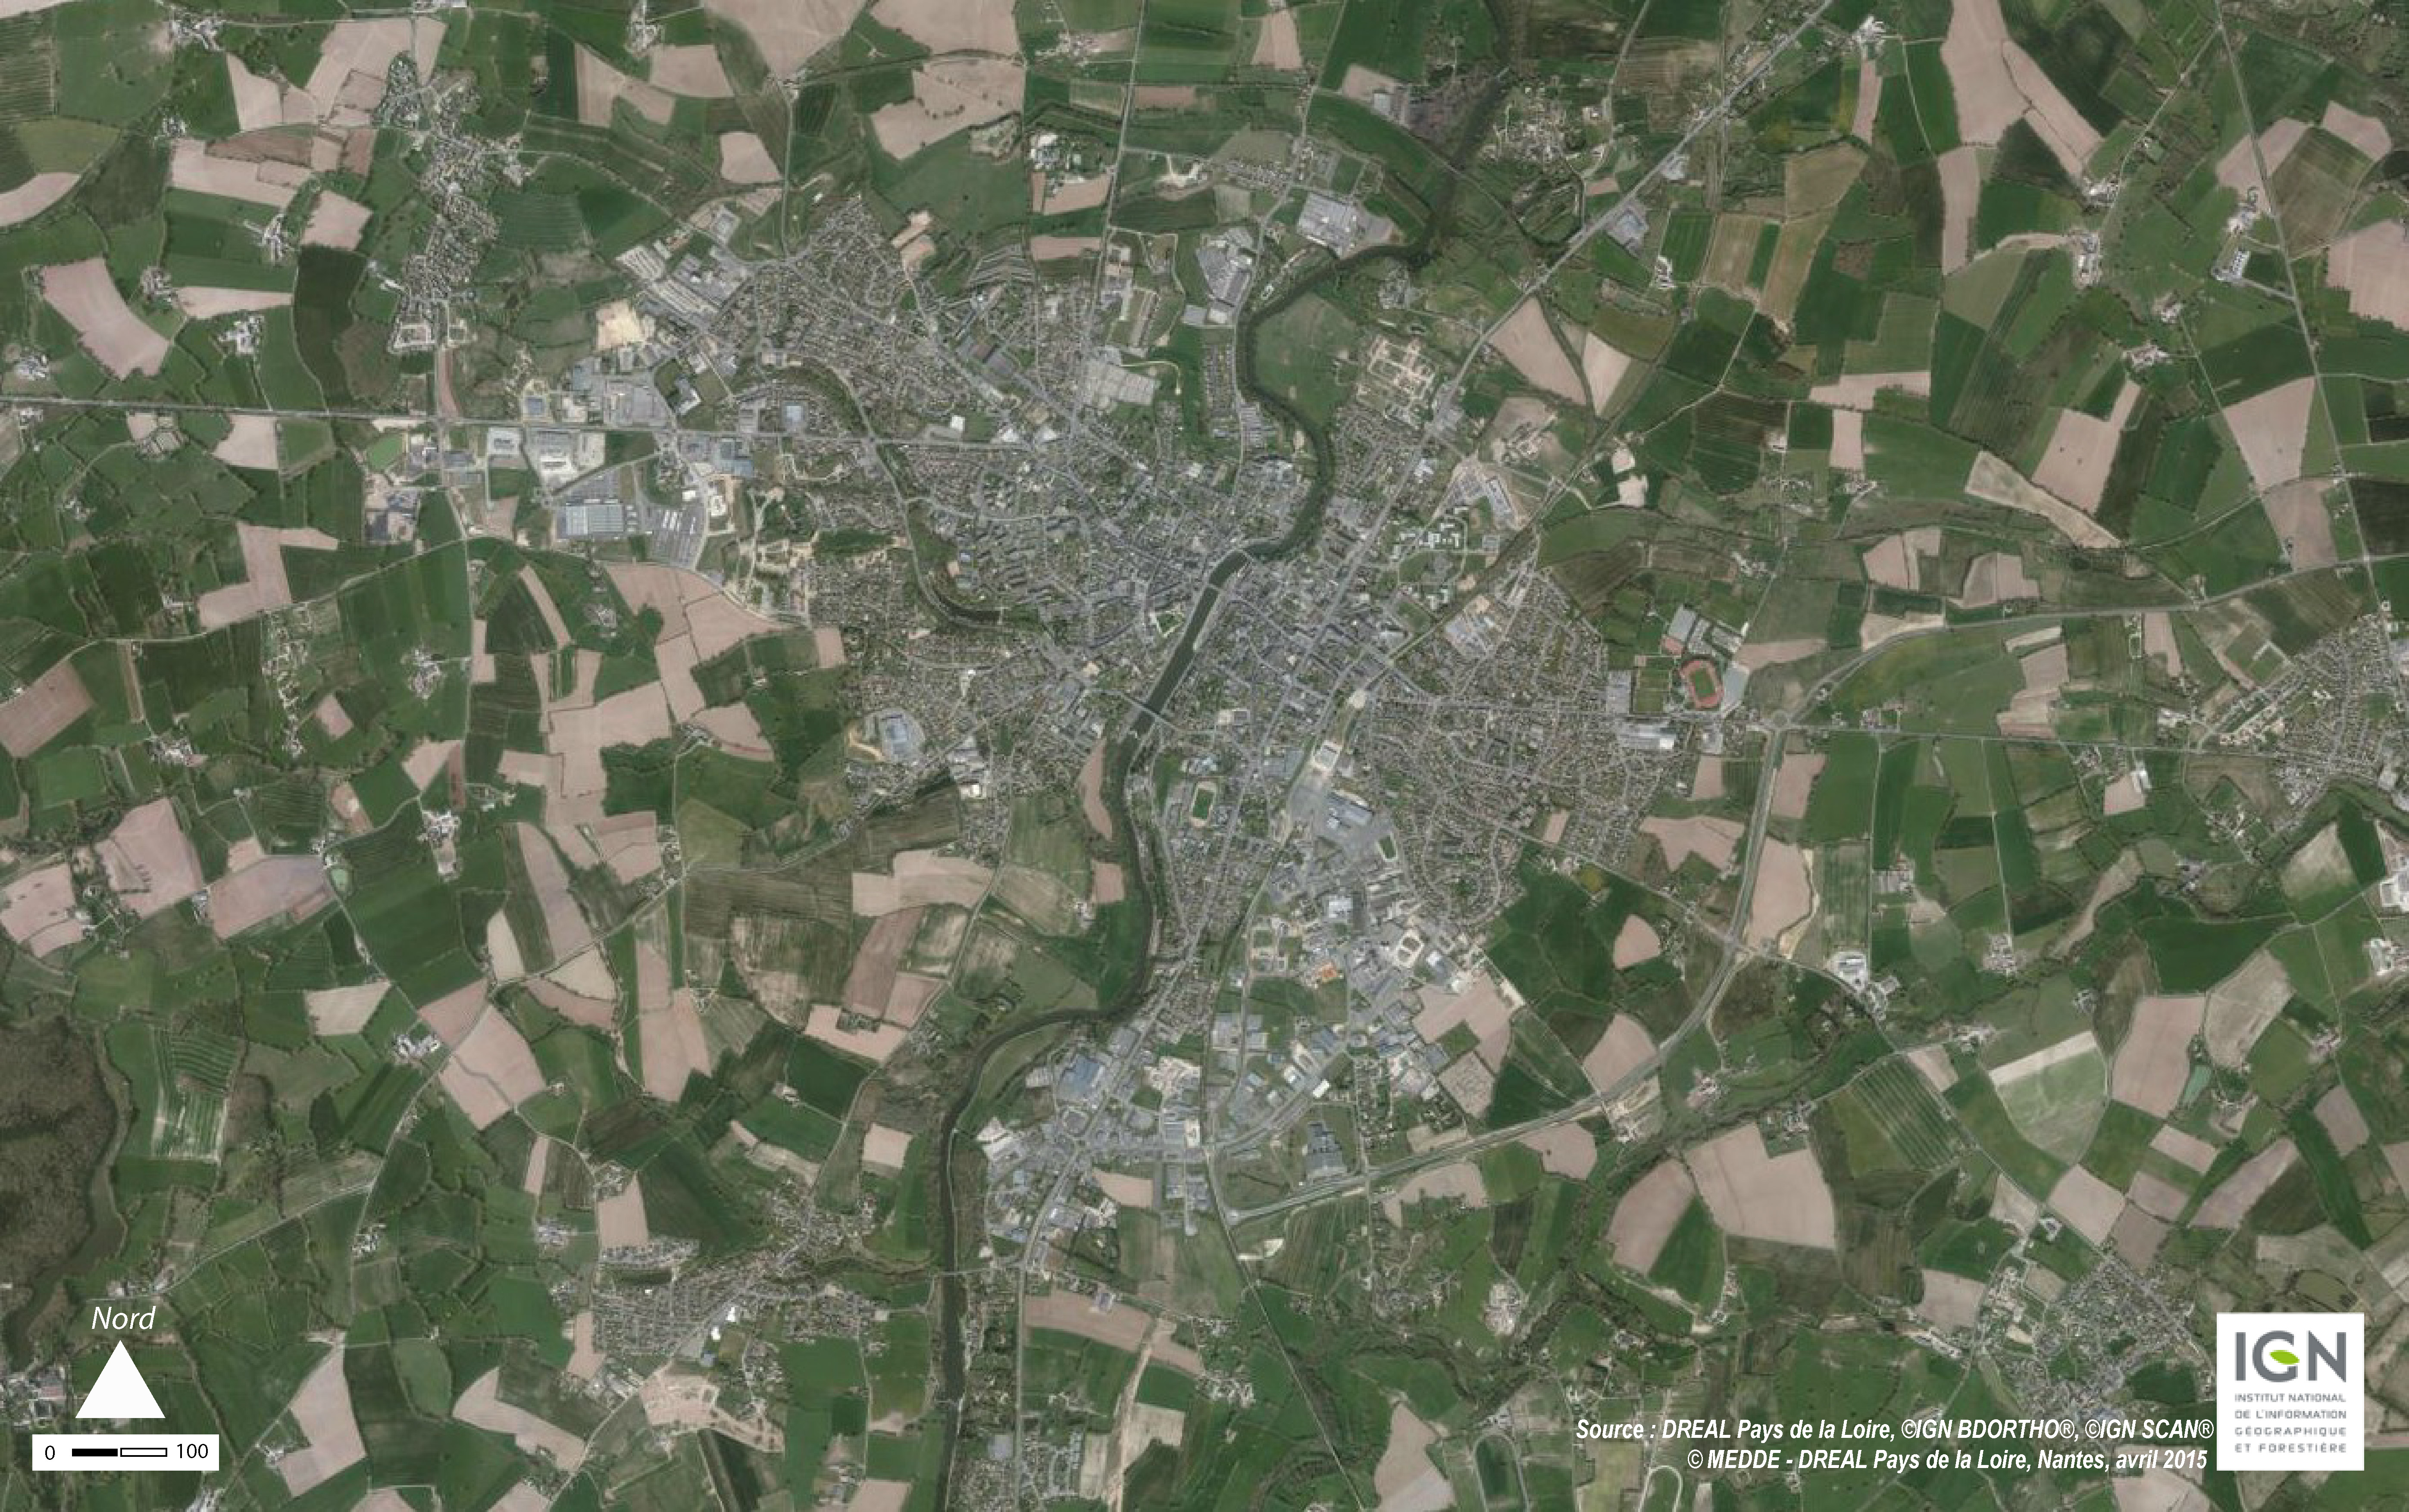 Carte IGN de la ville de Mayenne (source : IGN) en grand format (nouvelle fenêtre)